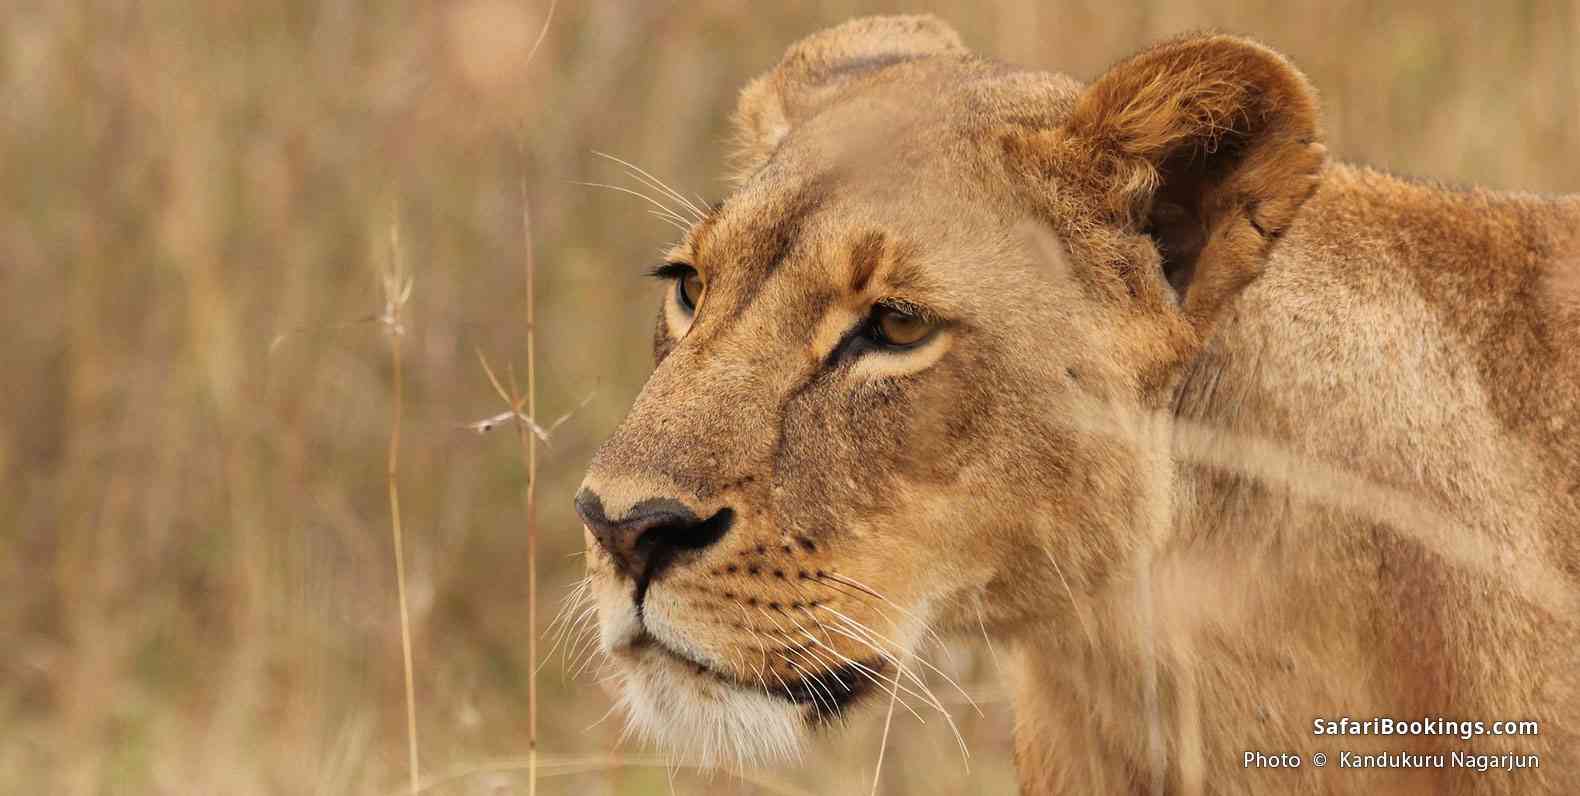 Lioness at Nairobi National Park. Kenya, 2018